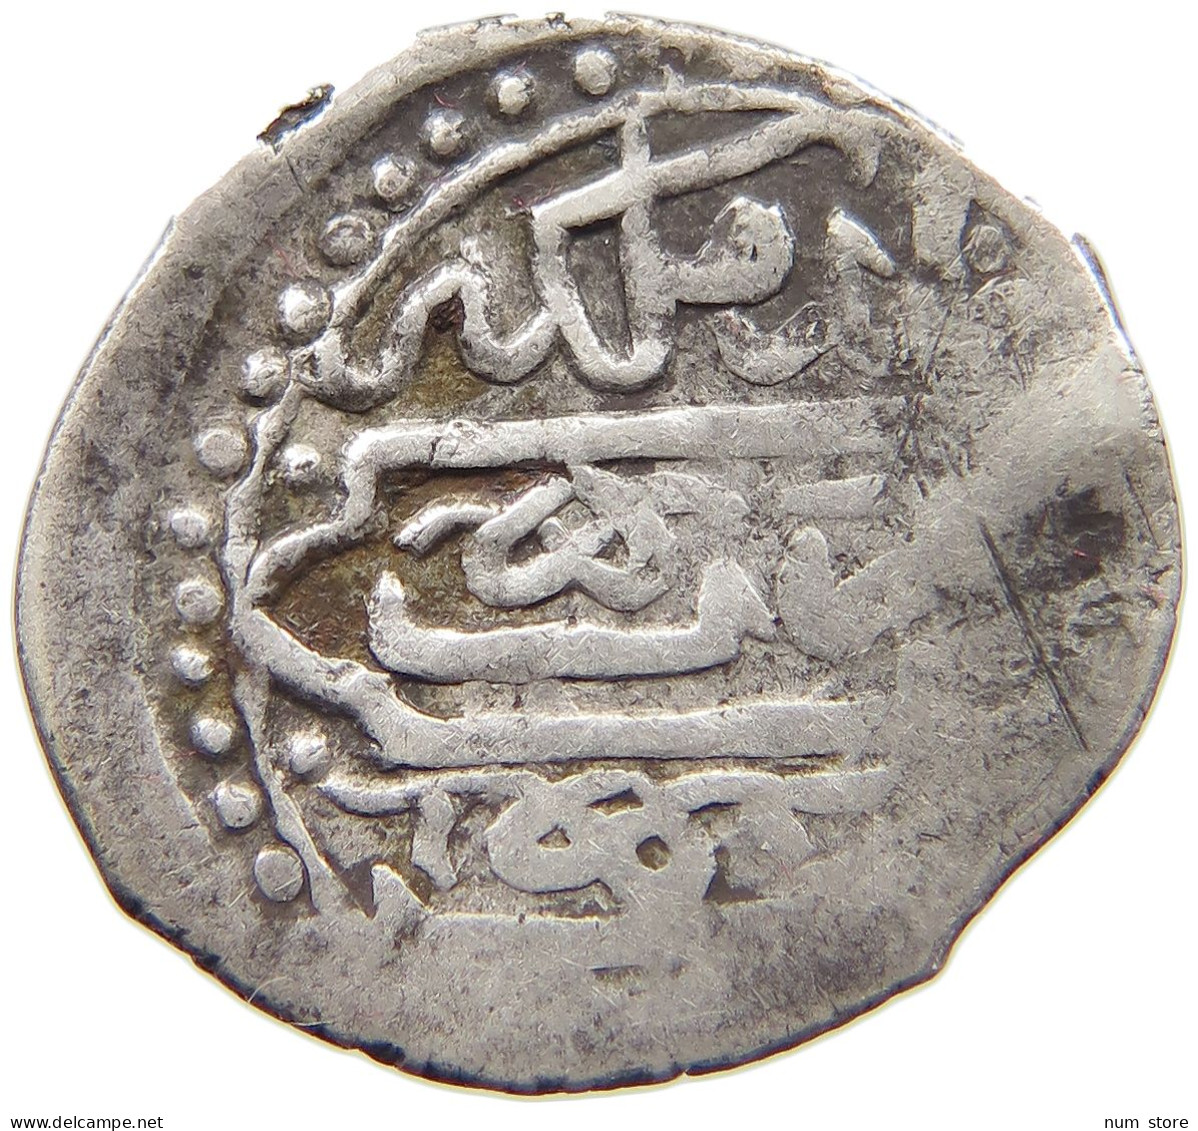 SYRIA SHAHI  MUHAMMAD III. IBN MURÂD III., 1003-1112 H./1595-1603 AD. ALEPPO, HALAB #MA 023559 - Syria